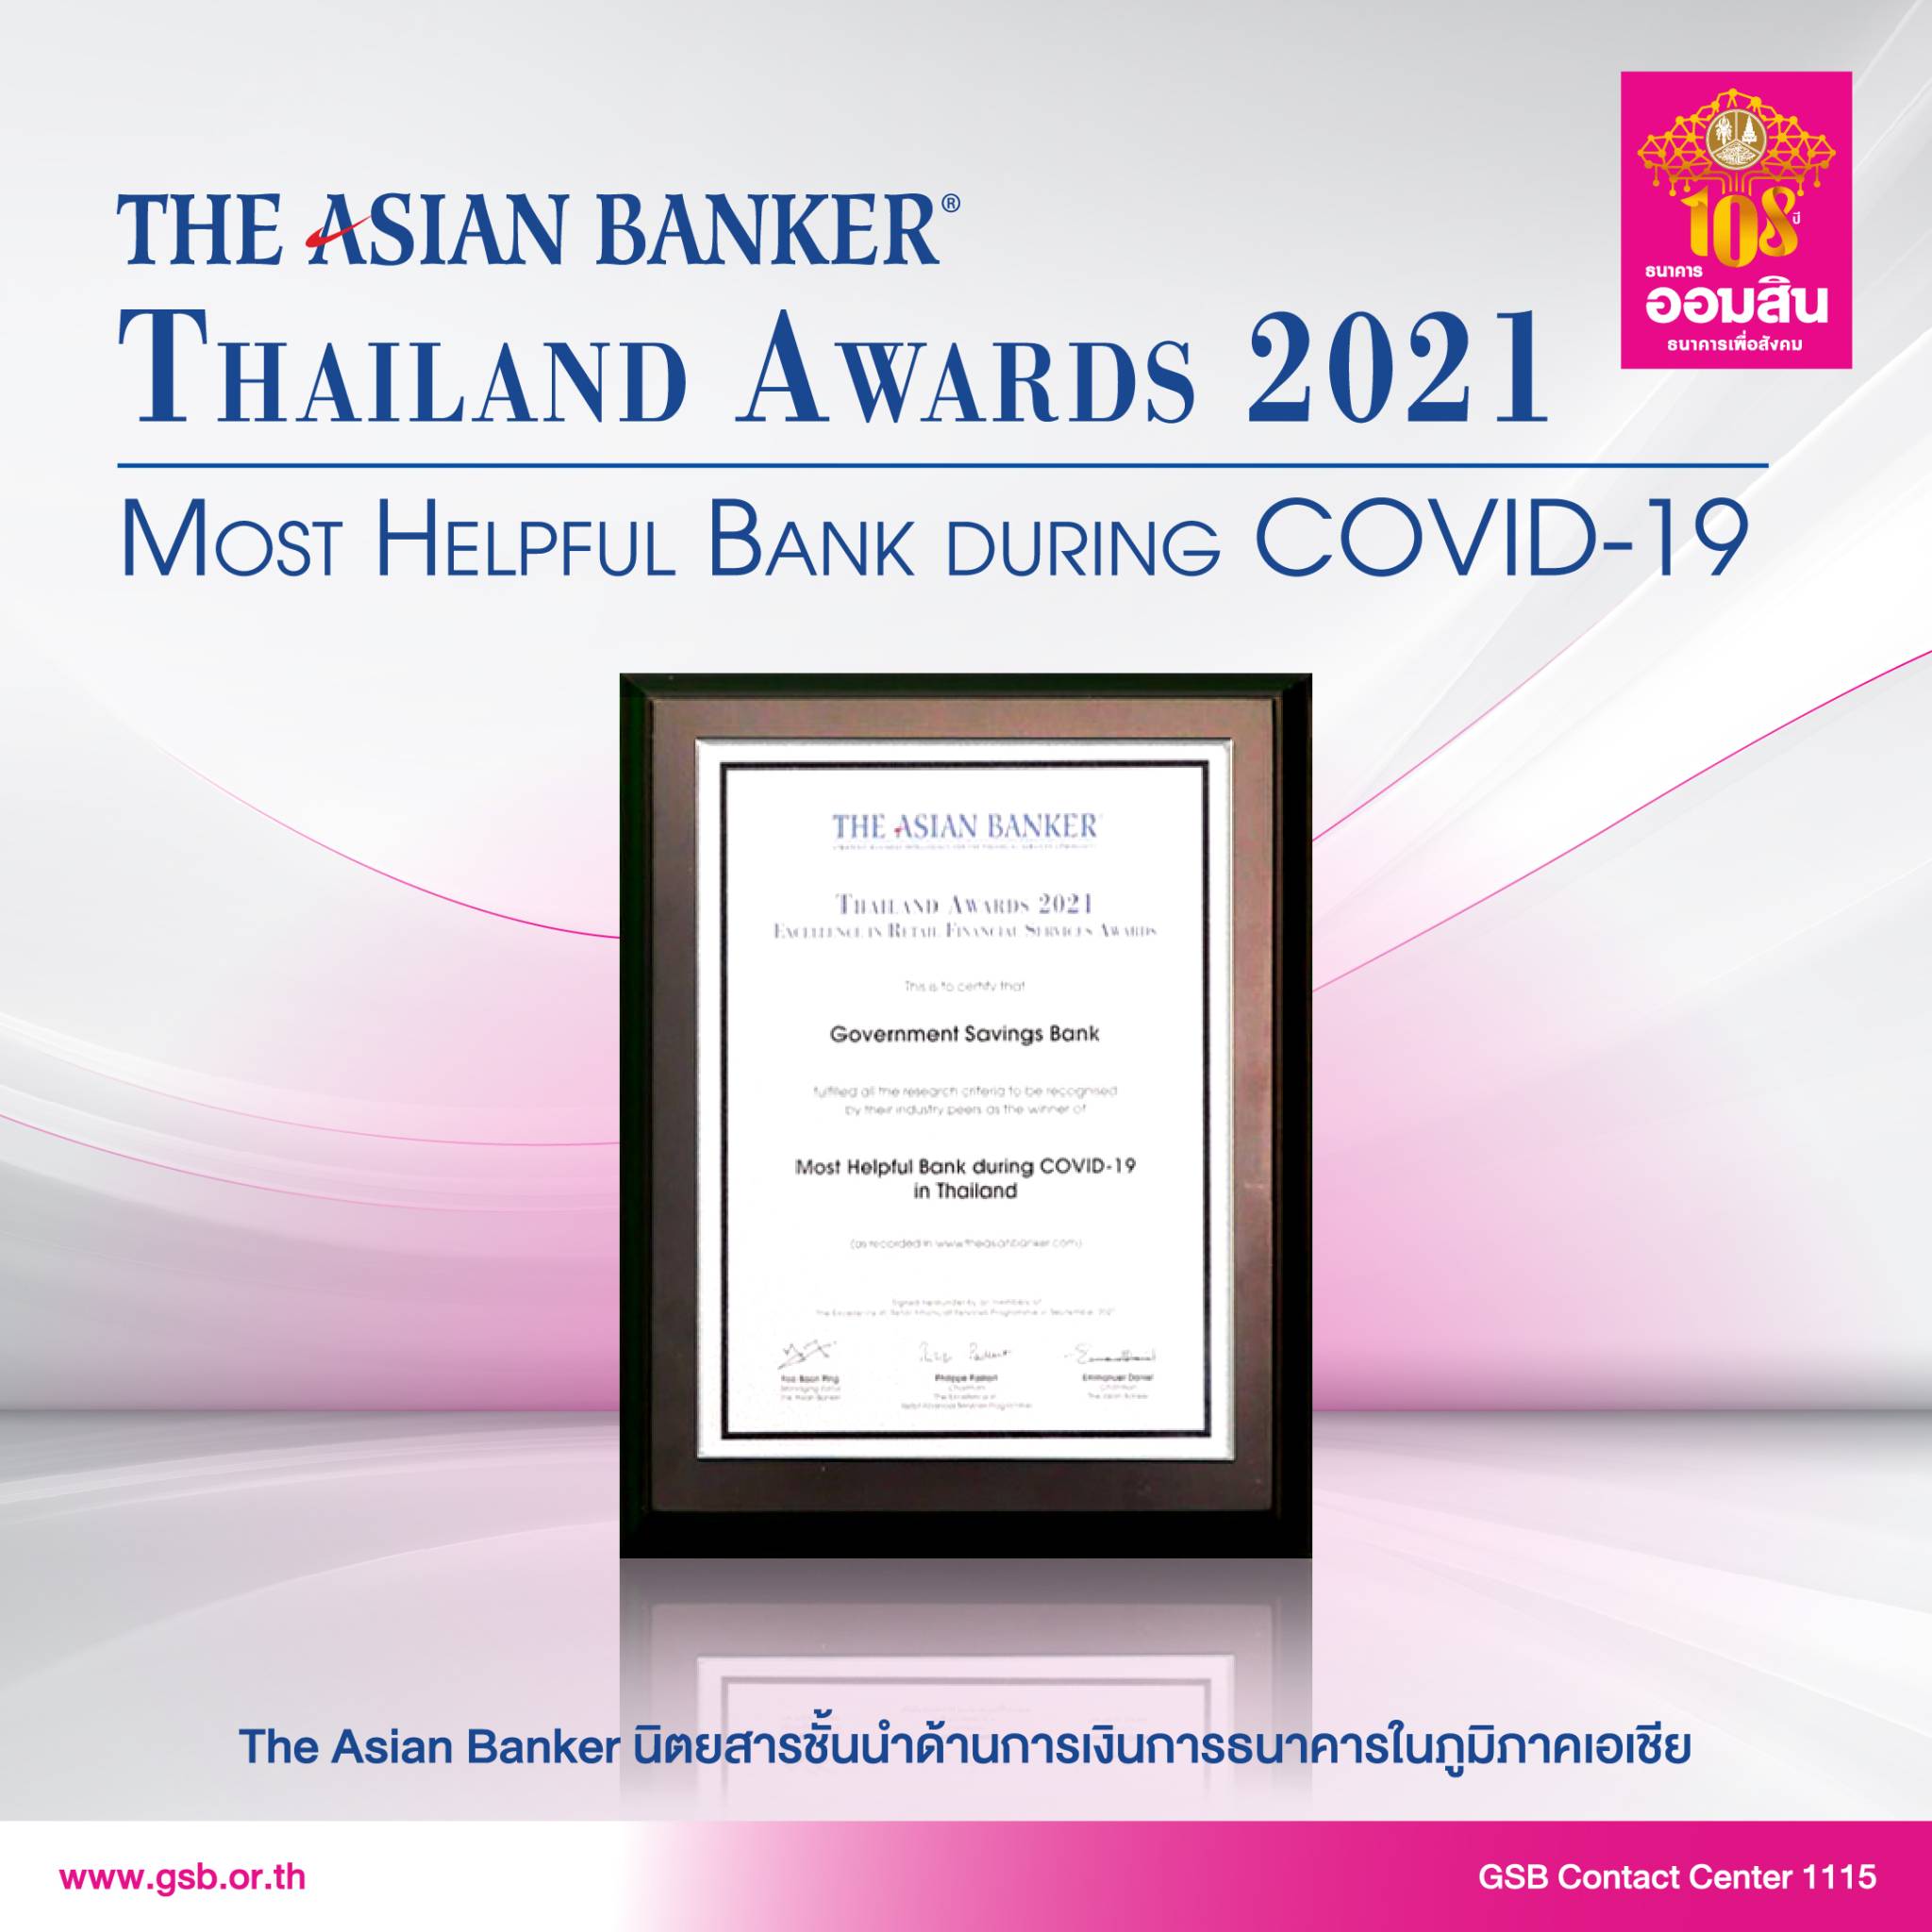 ออมสิน คว้ารางวัลทรงคุณค่า “Most Helpful Bank During COVID-19 in Thailand” ธนาคารที่ช่วยเหลือผู้เดือดร้อนช่วงโควิด-19 มากที่สุด ตอกย้ำบทบาทธนาคารเพื่อสังคม